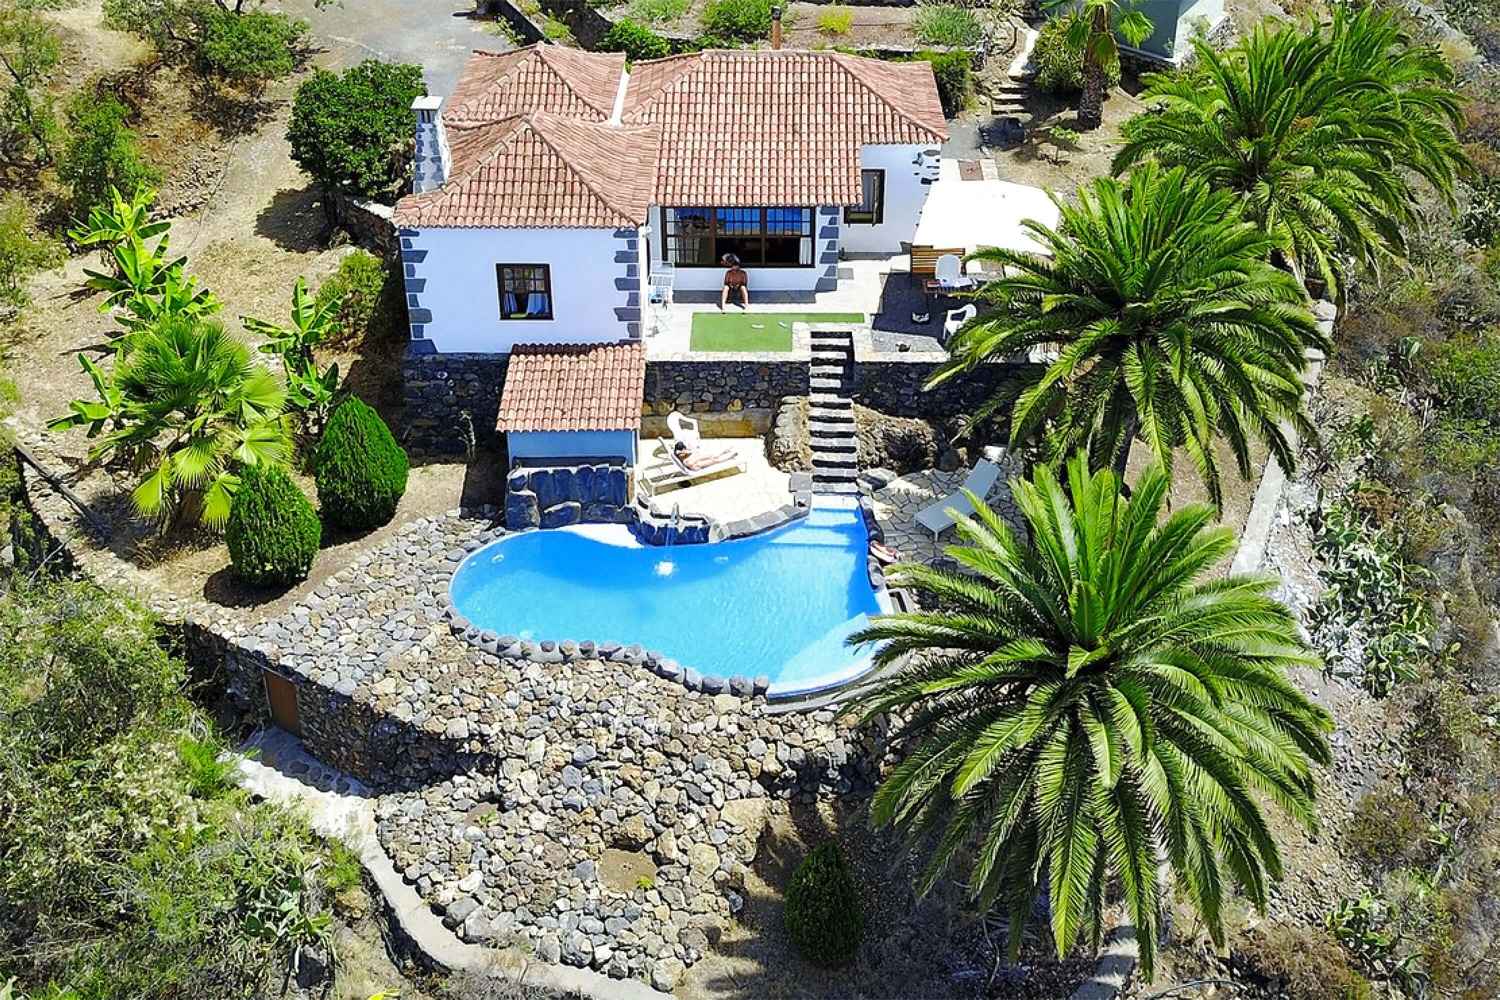 Casa rústica de dos dormitorios con una magnífica zona exterior con bonitos detalles, piscina privada y fantásticas vistas al verde paisaje de La Palma